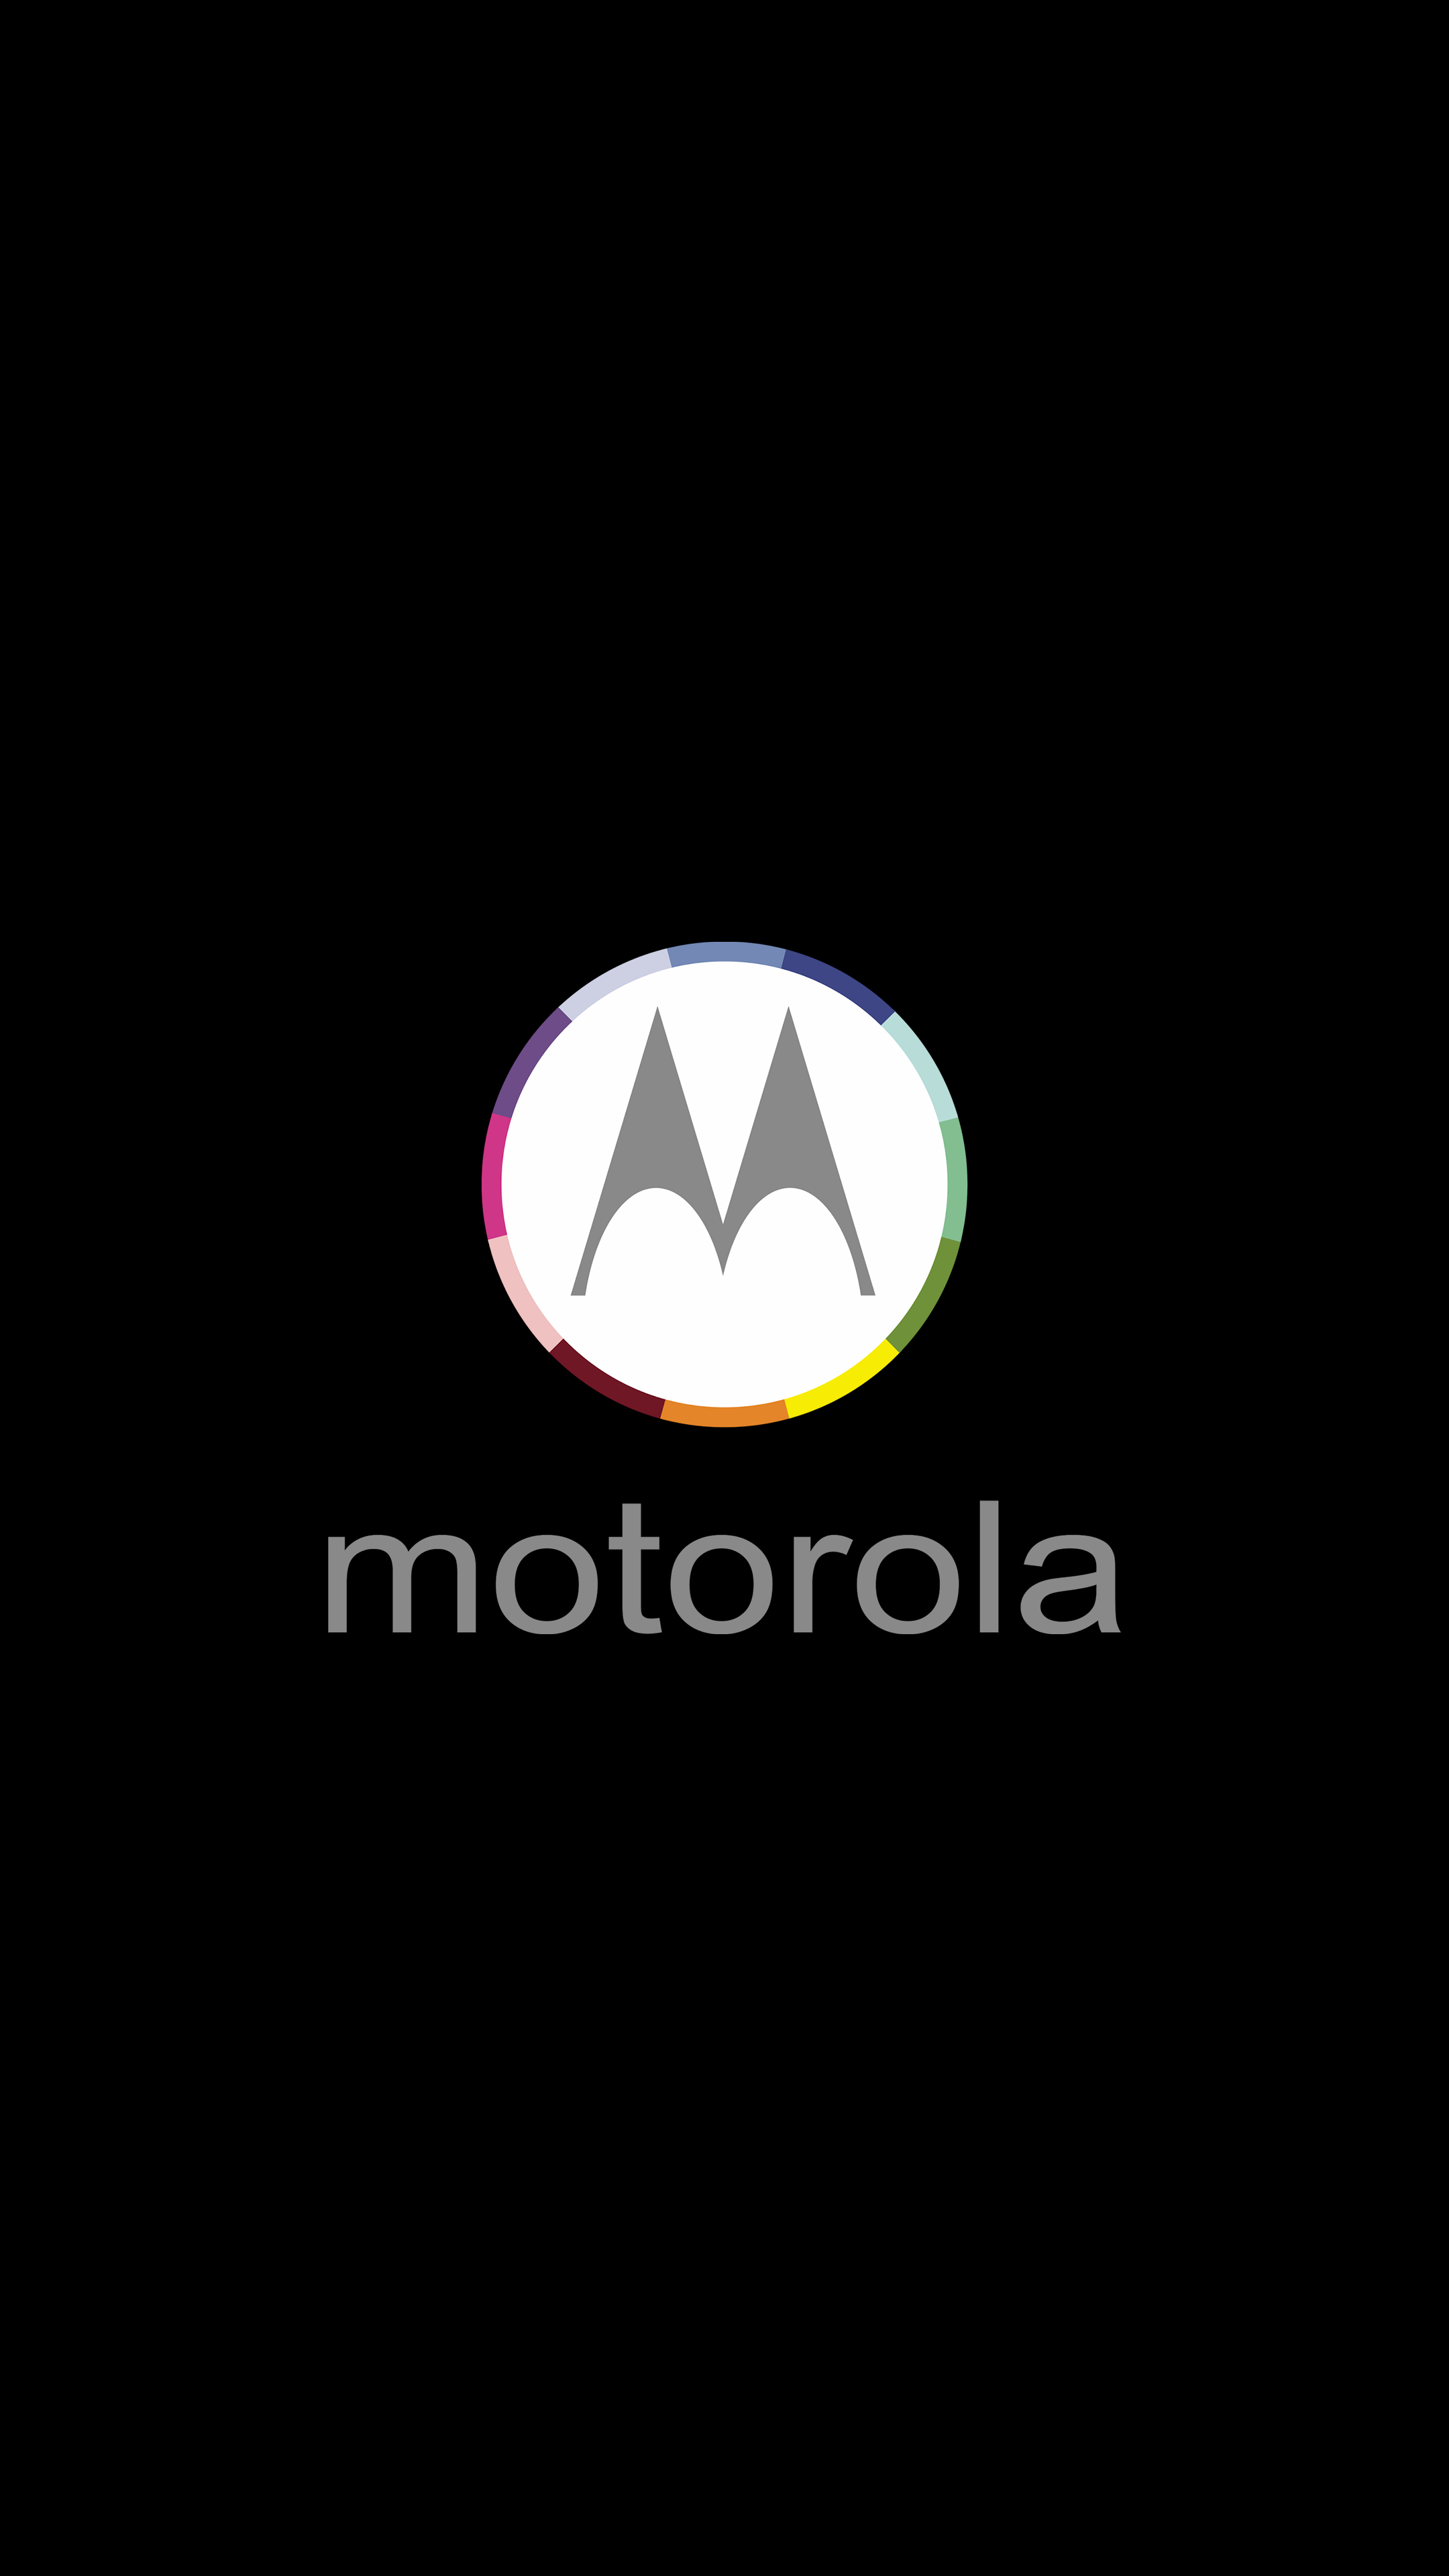 Motorola Wallpaper Top Background